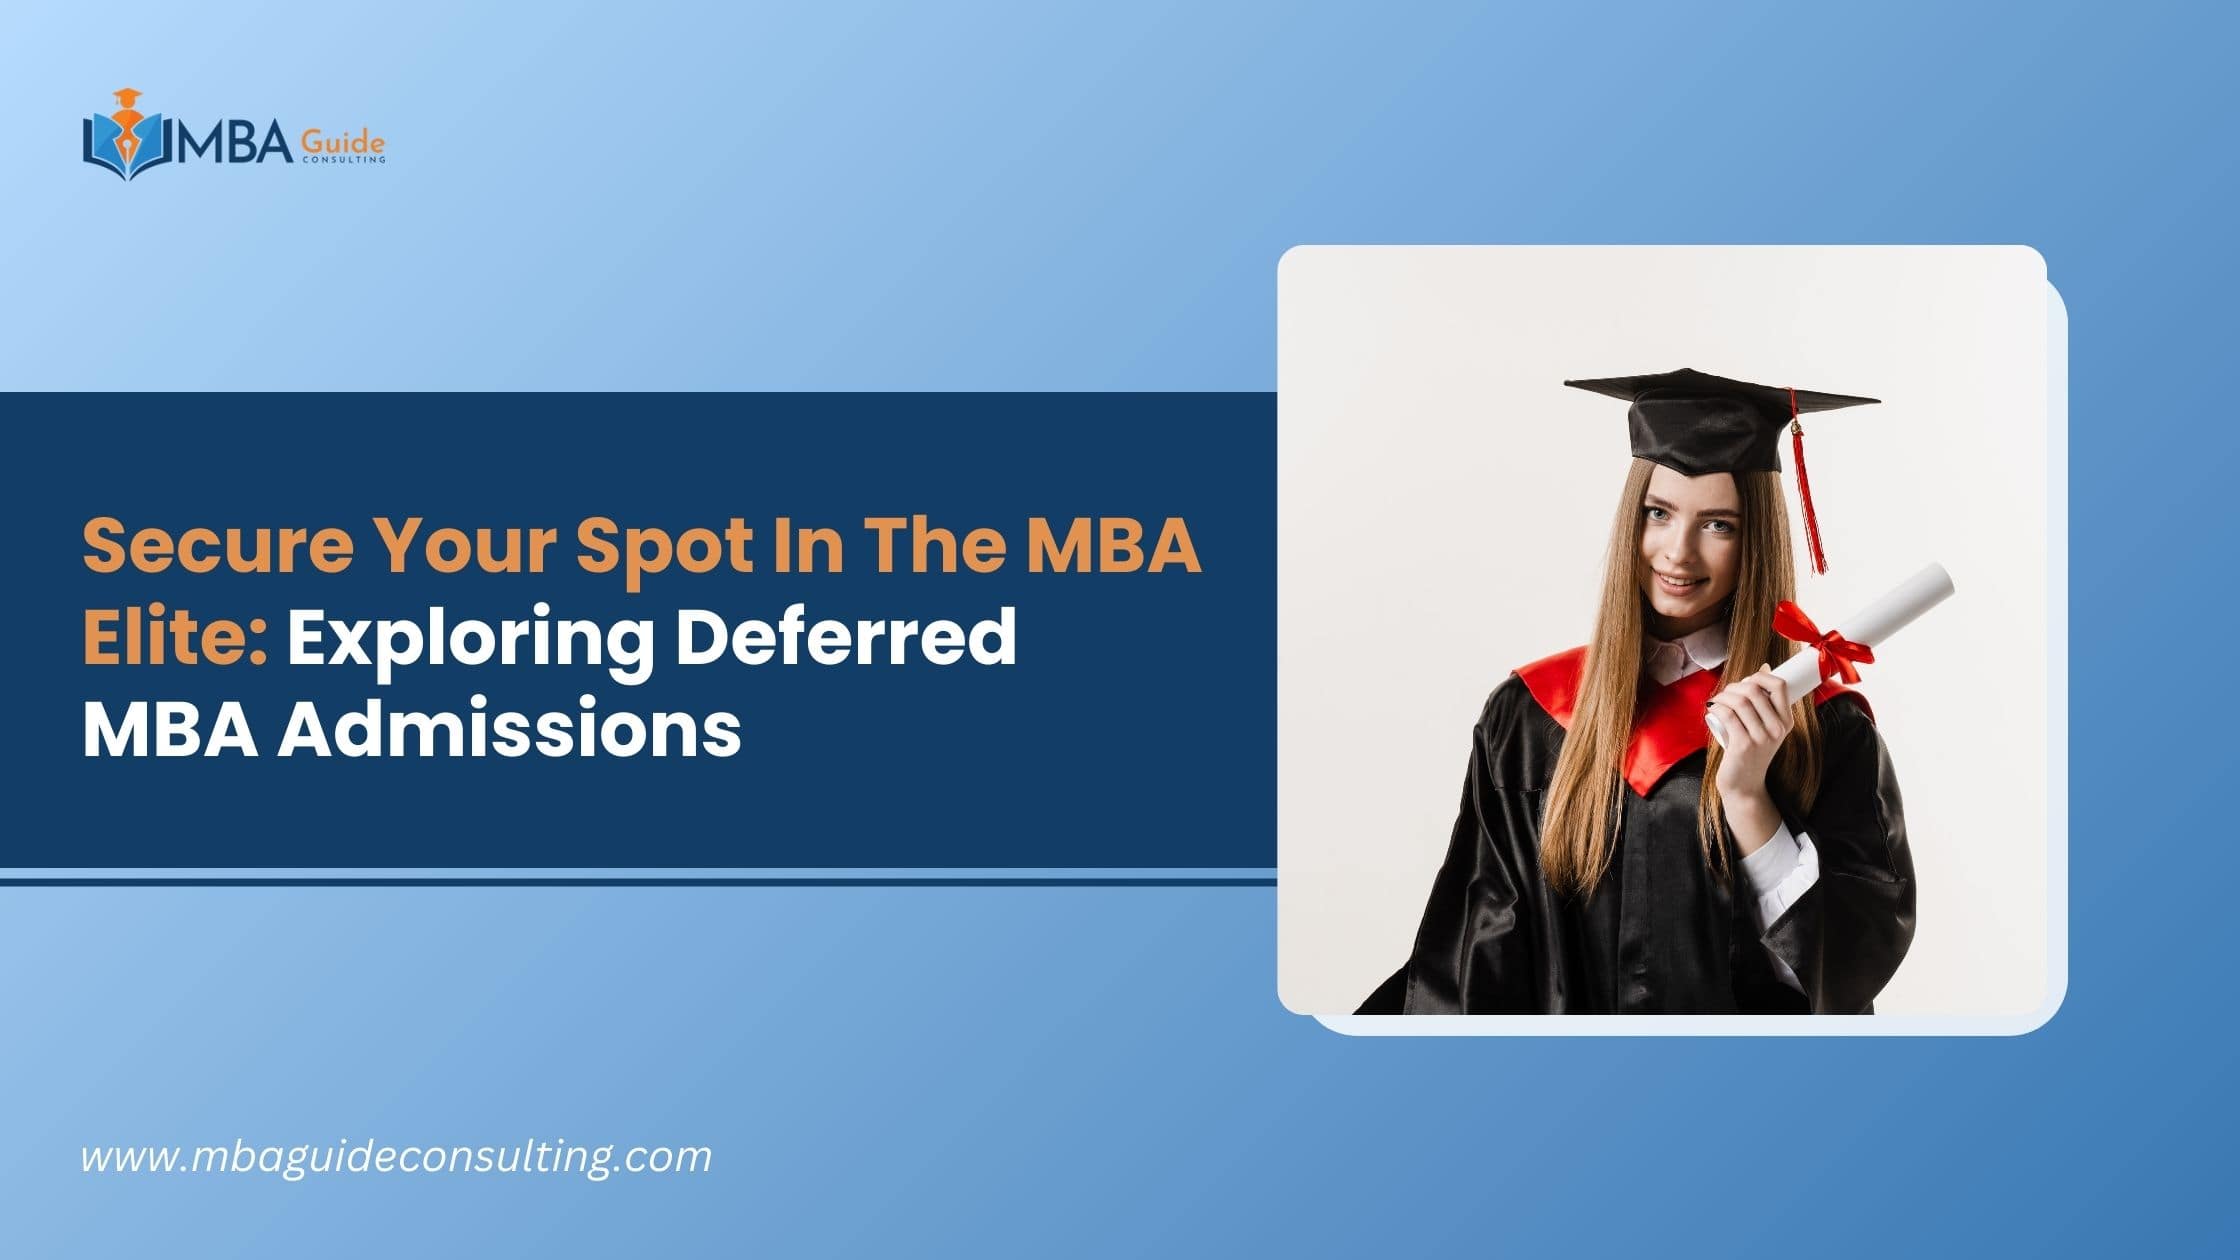 Deferred MBA